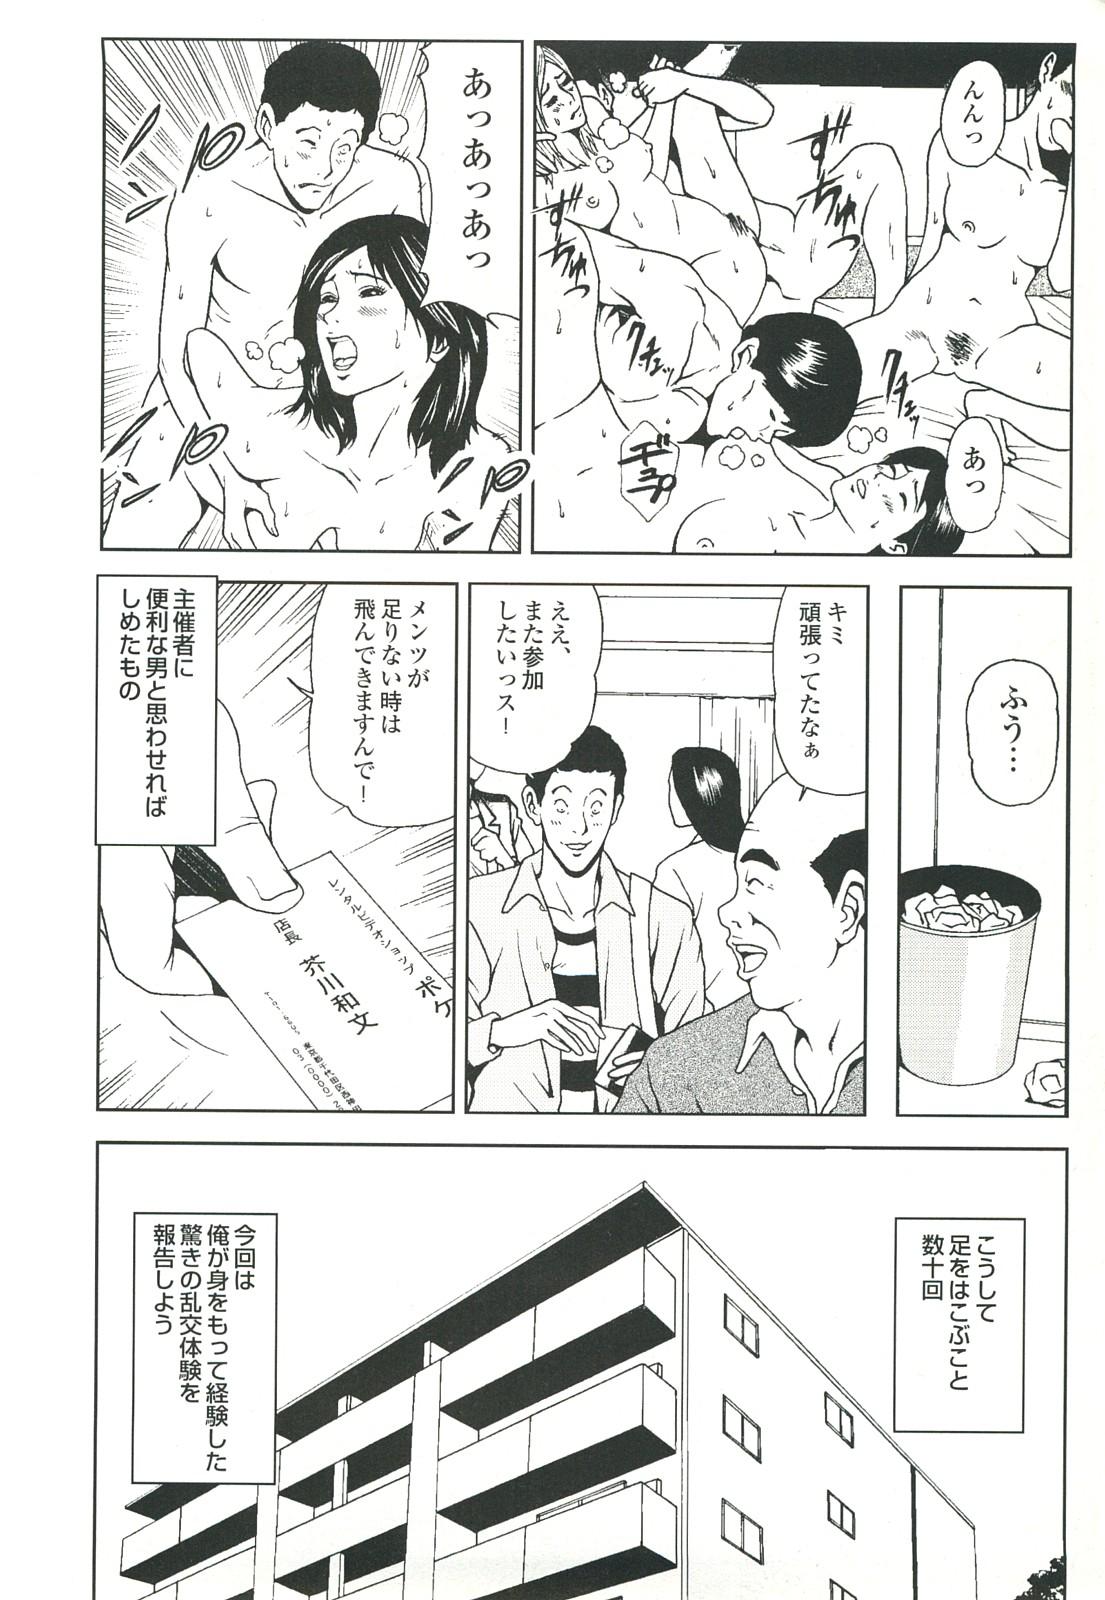 コミック裏モノJAPAN Vol.18 今井のりたつスペシャル号 61